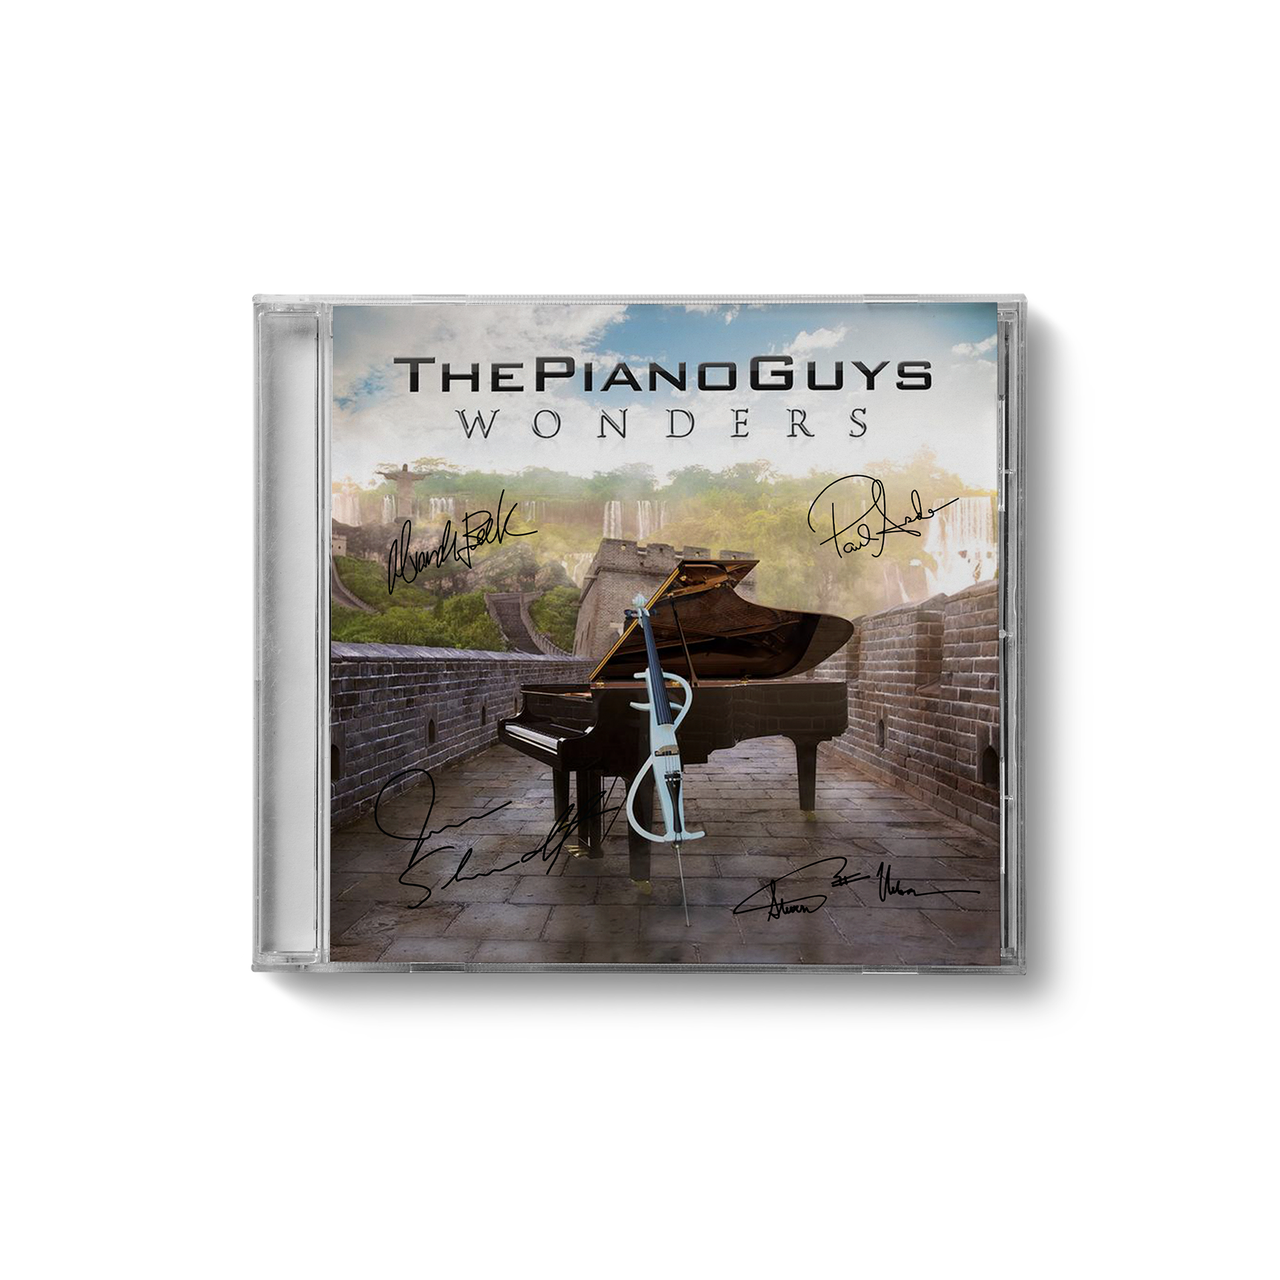 The Piano Guys "WONDERS"